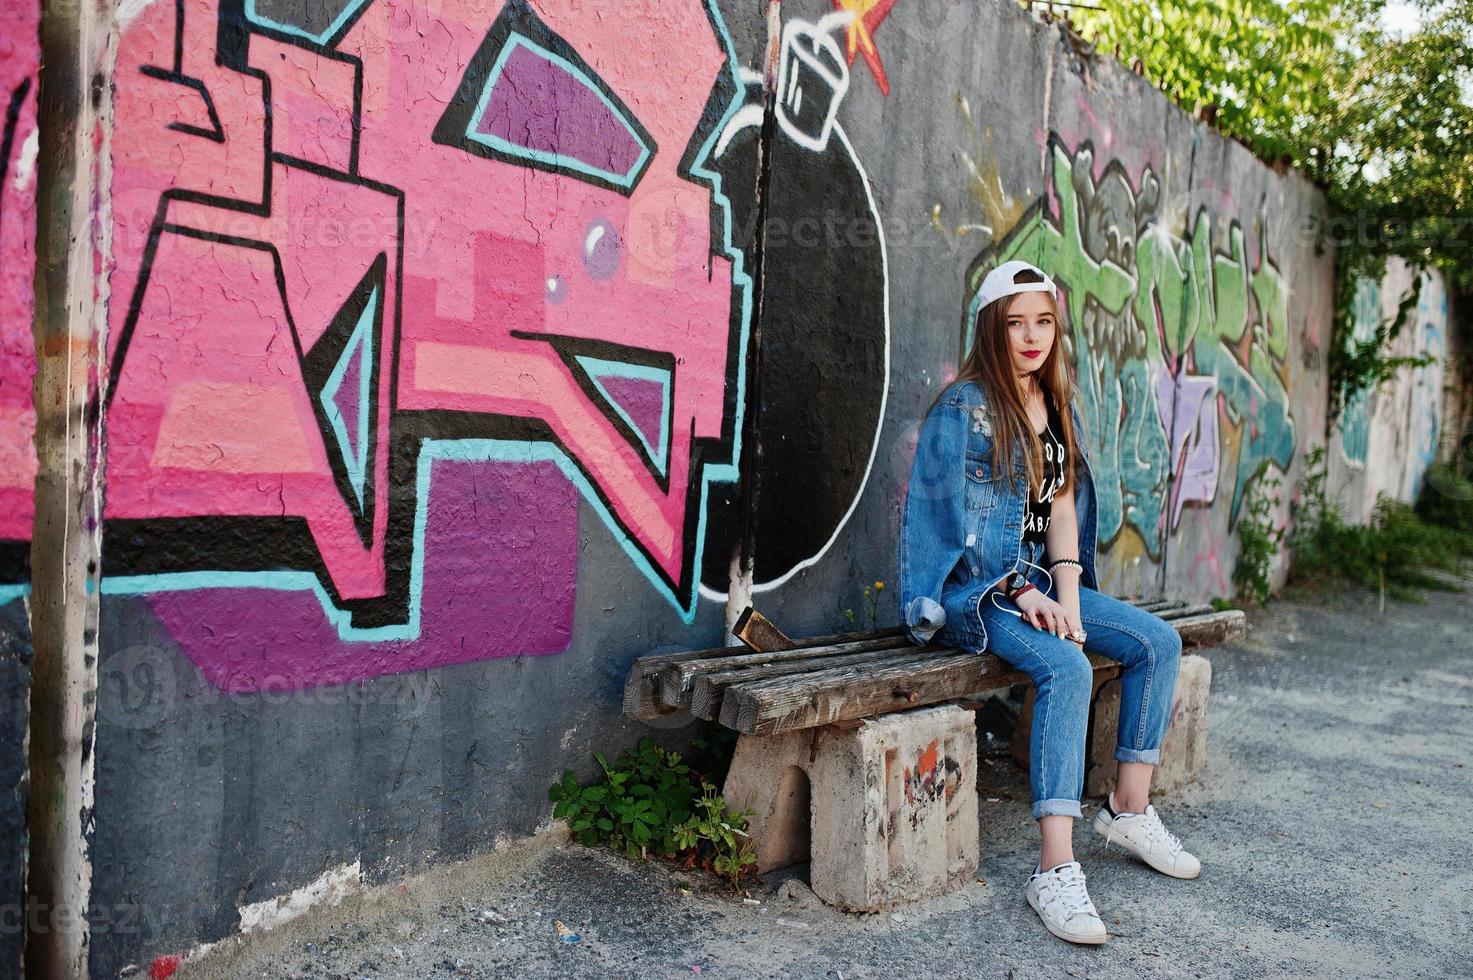 stilvolles, lässiges hipster-mädchen in mütze und jeans, das musik über kopfhörer des handys gegen große graffitiwand mit bombe hört. foto